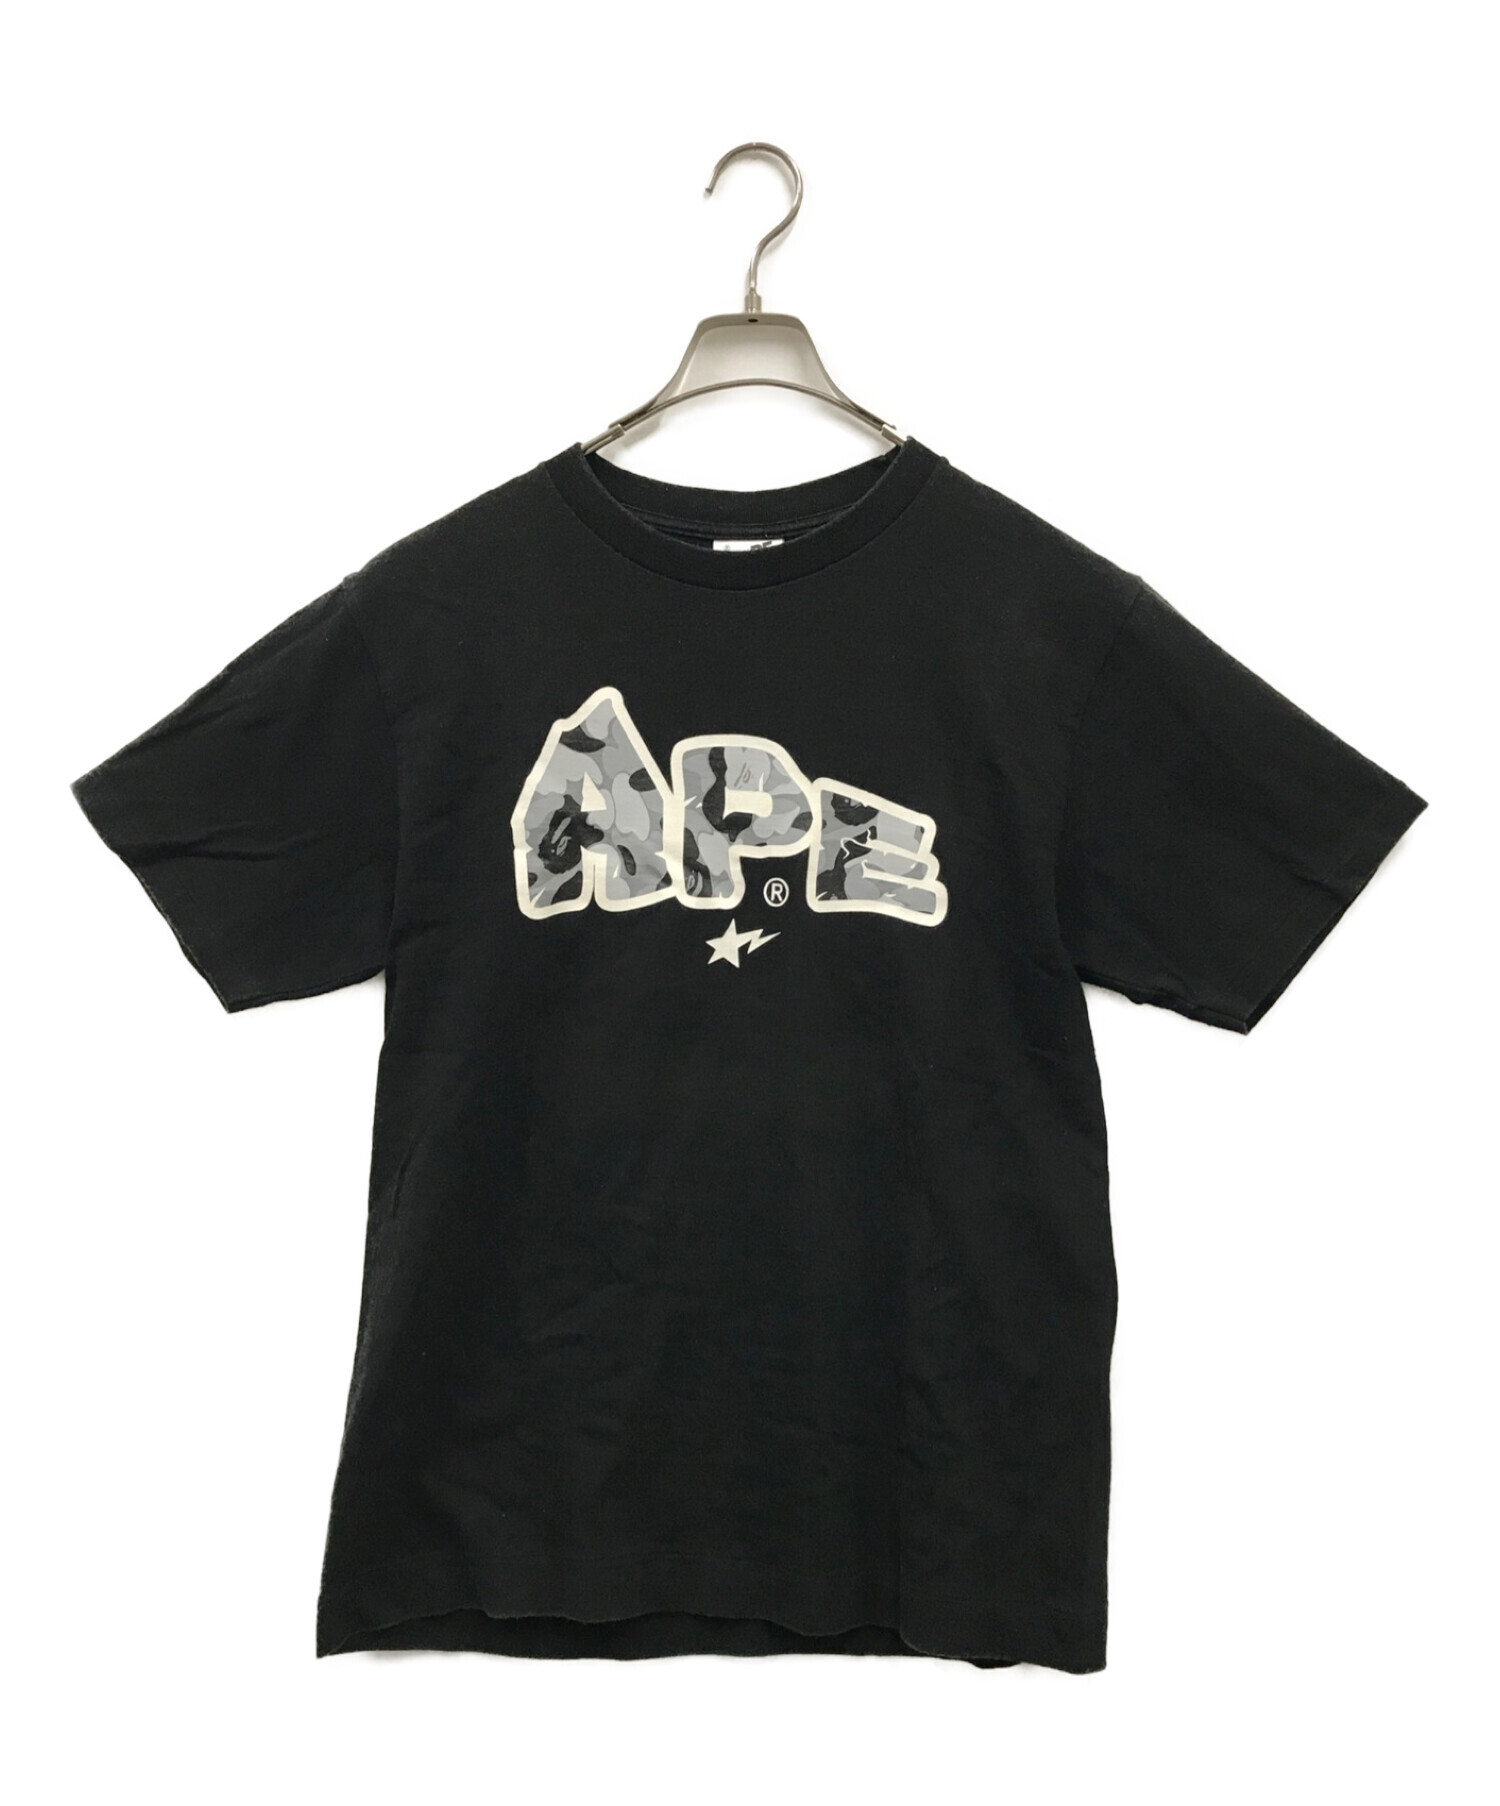 A BATHING APE (アベイシングエイプ) エイプスタープリントTシャツ ブラック サイズ:M